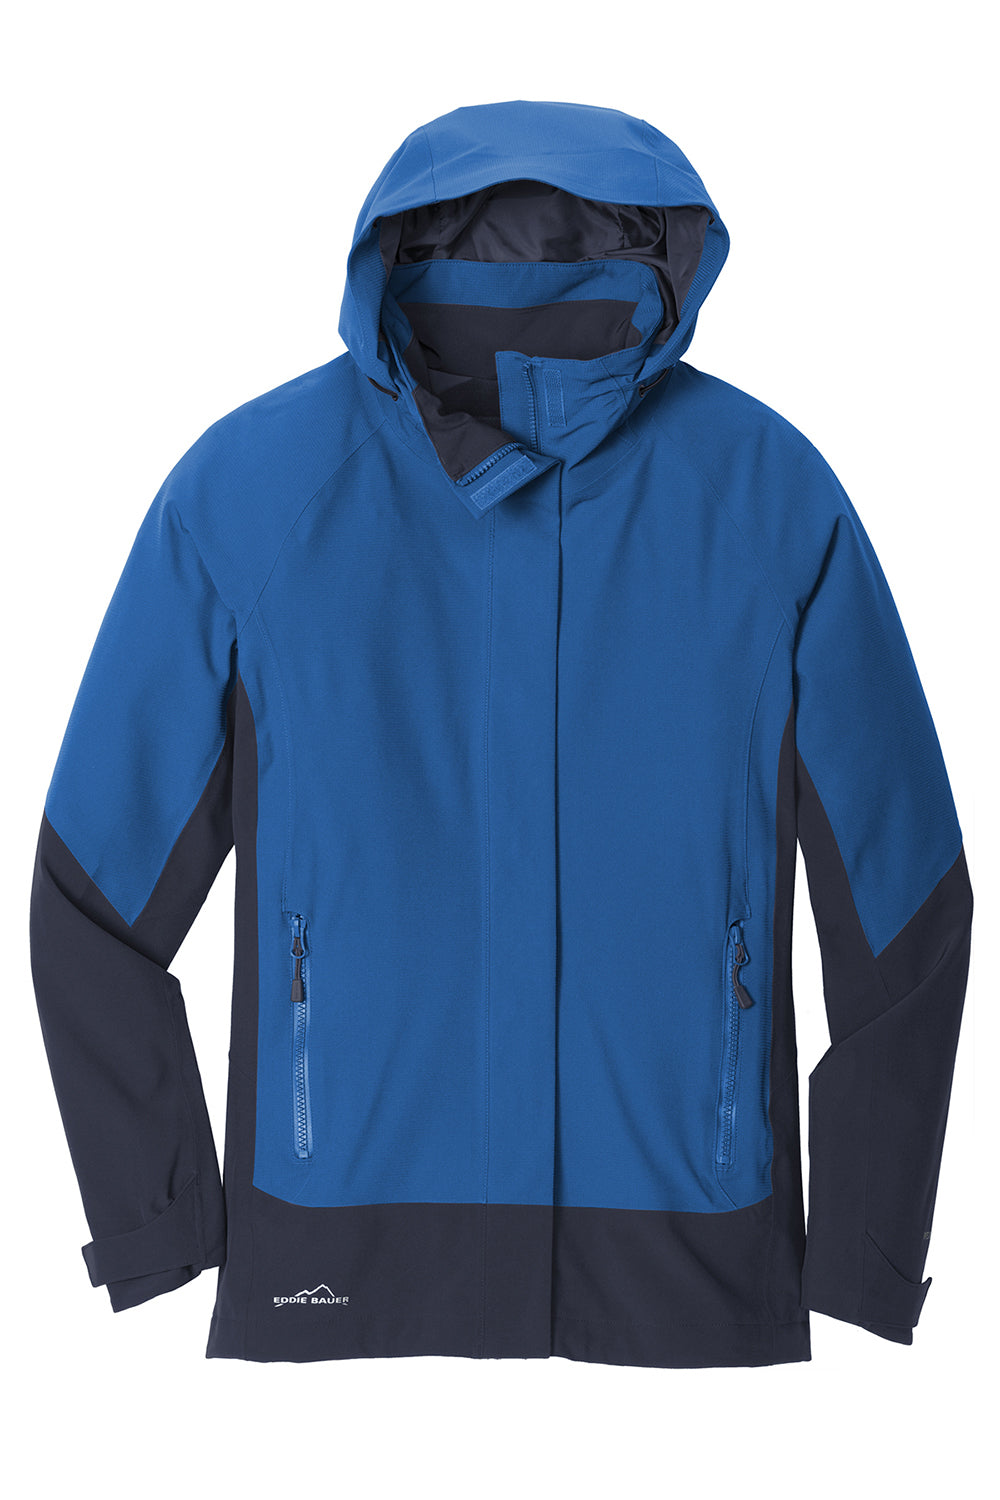 Eddie Bauer EB559 Womens WeatherEdge Waterproof Full Zip Hooded Jacket Cobalt Blue Flat Front